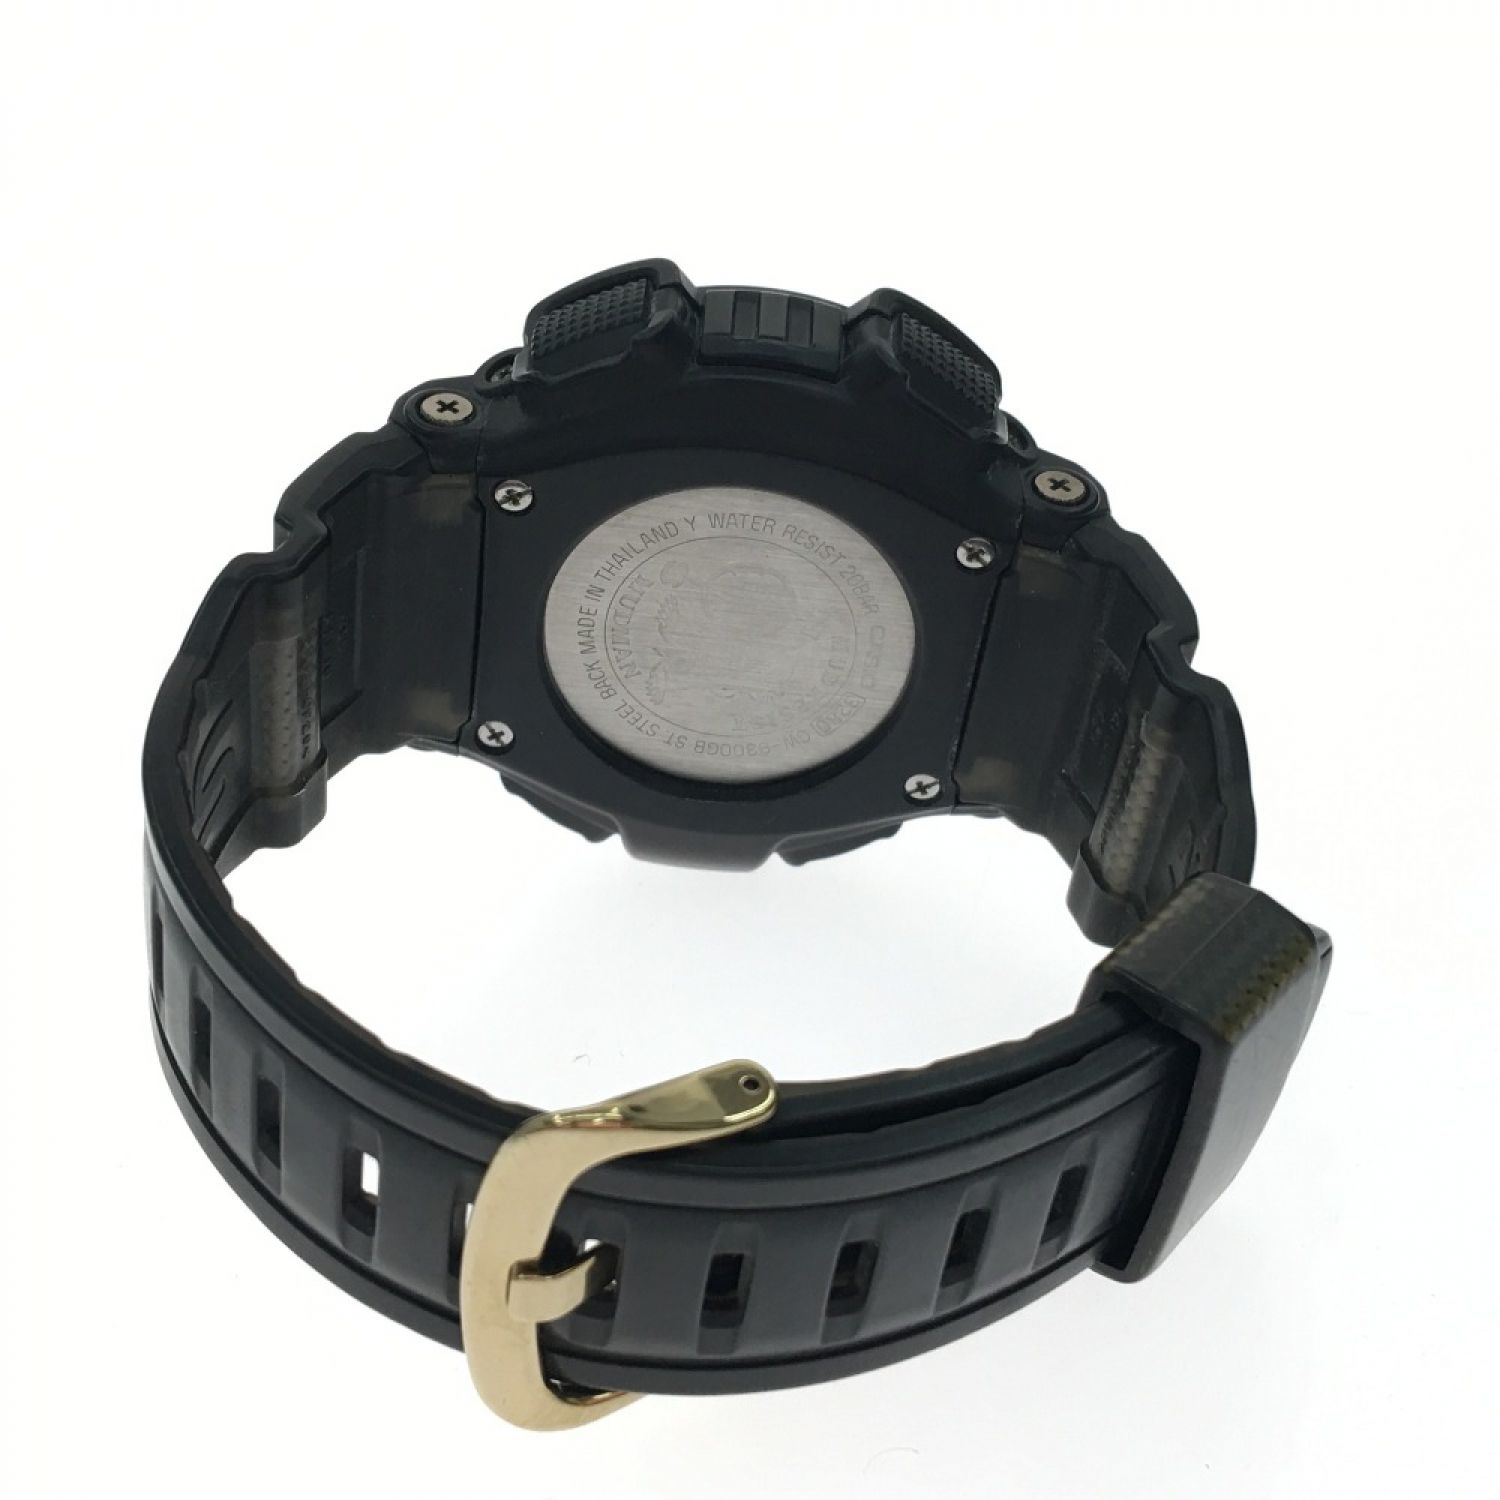 《人気》G-SHOCK MT-G 腕時計 ブラック デジタル タフソーラーy